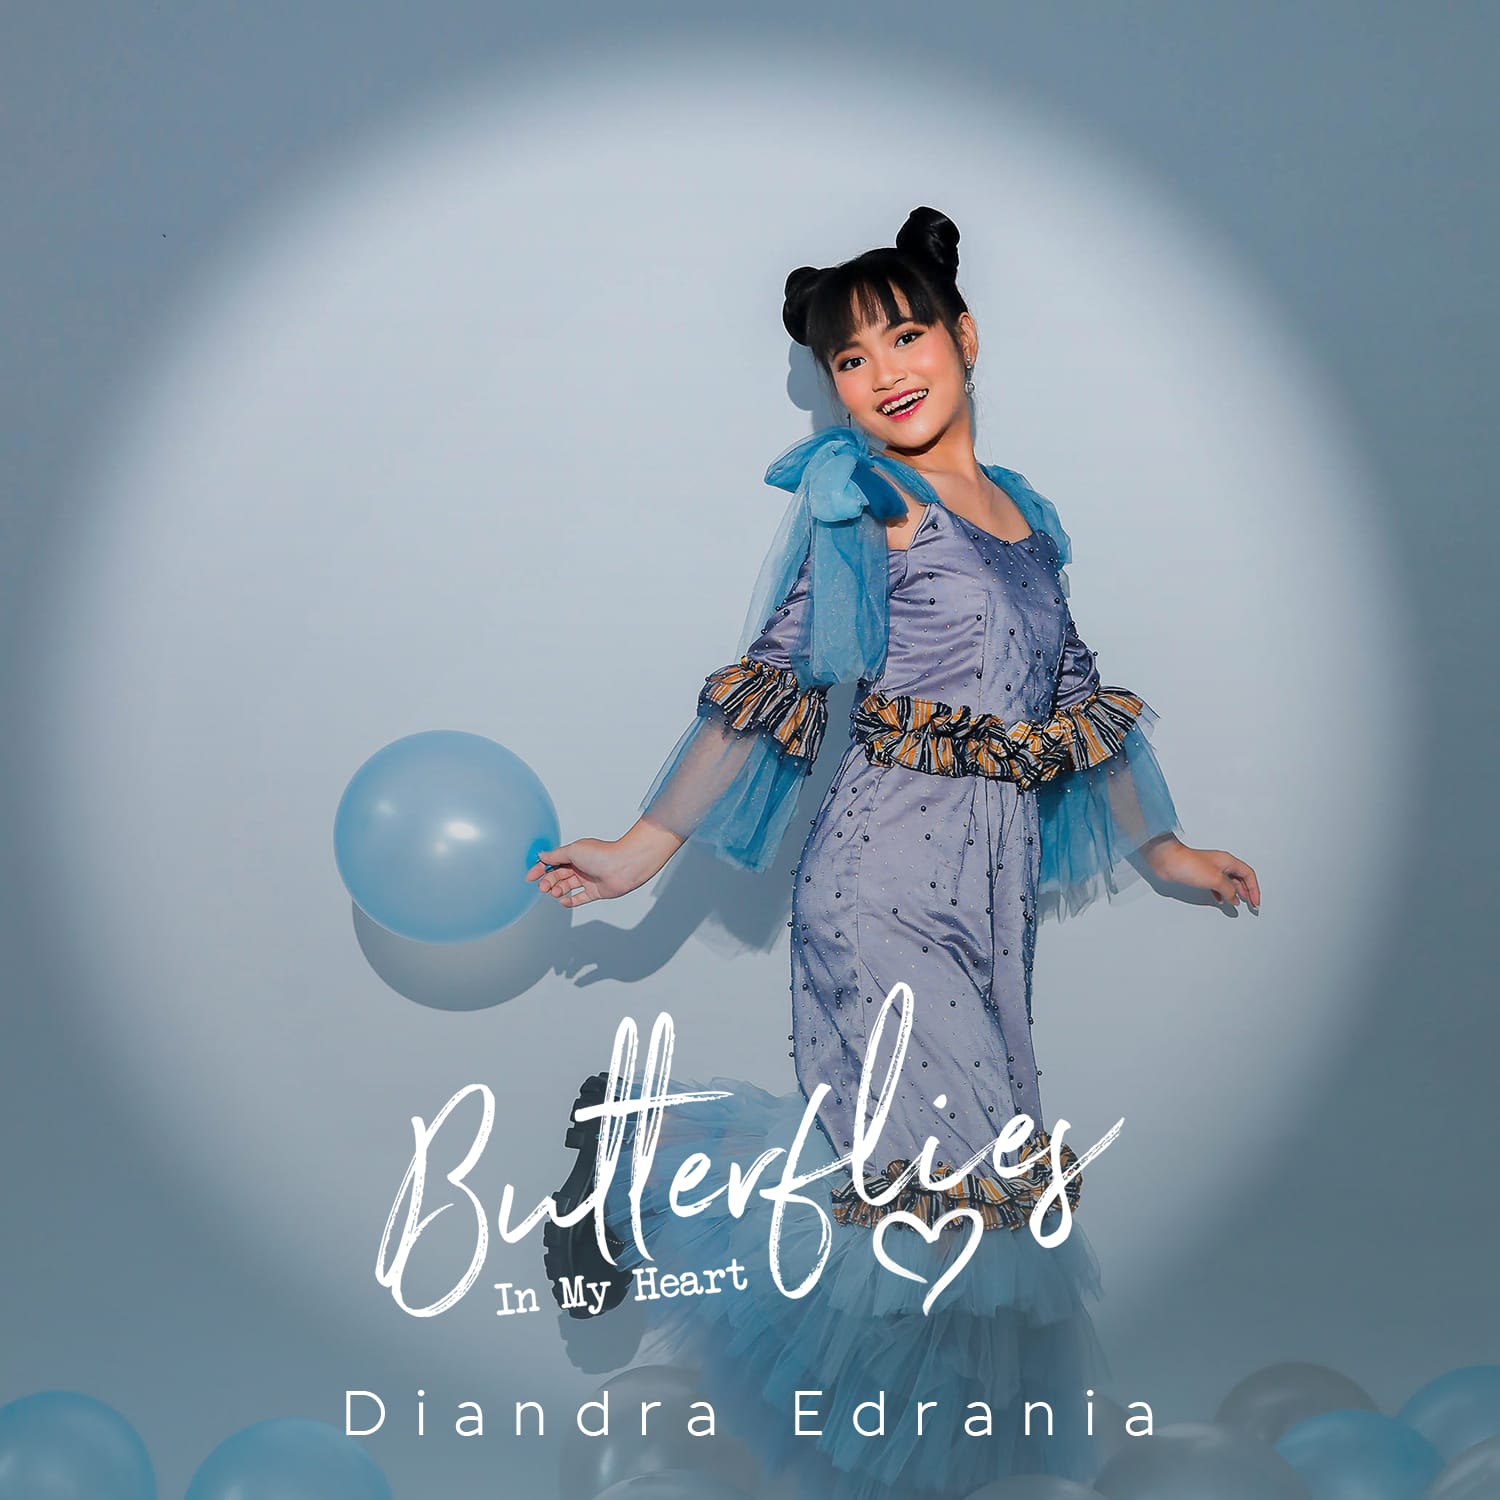 Diandra Edrania kembali merilis Album Baru bertajuk Butterflies In My Heart